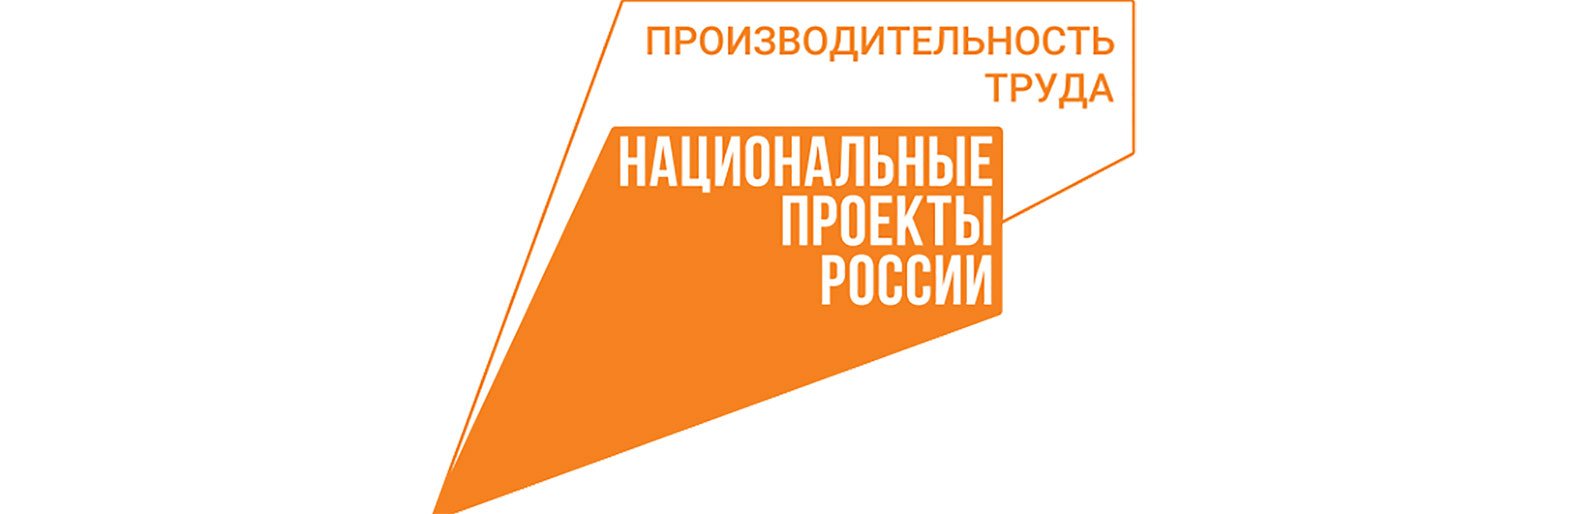 Белгородская область вошла в ТОП10 лучших регионов по адресной поддержке производительности труда